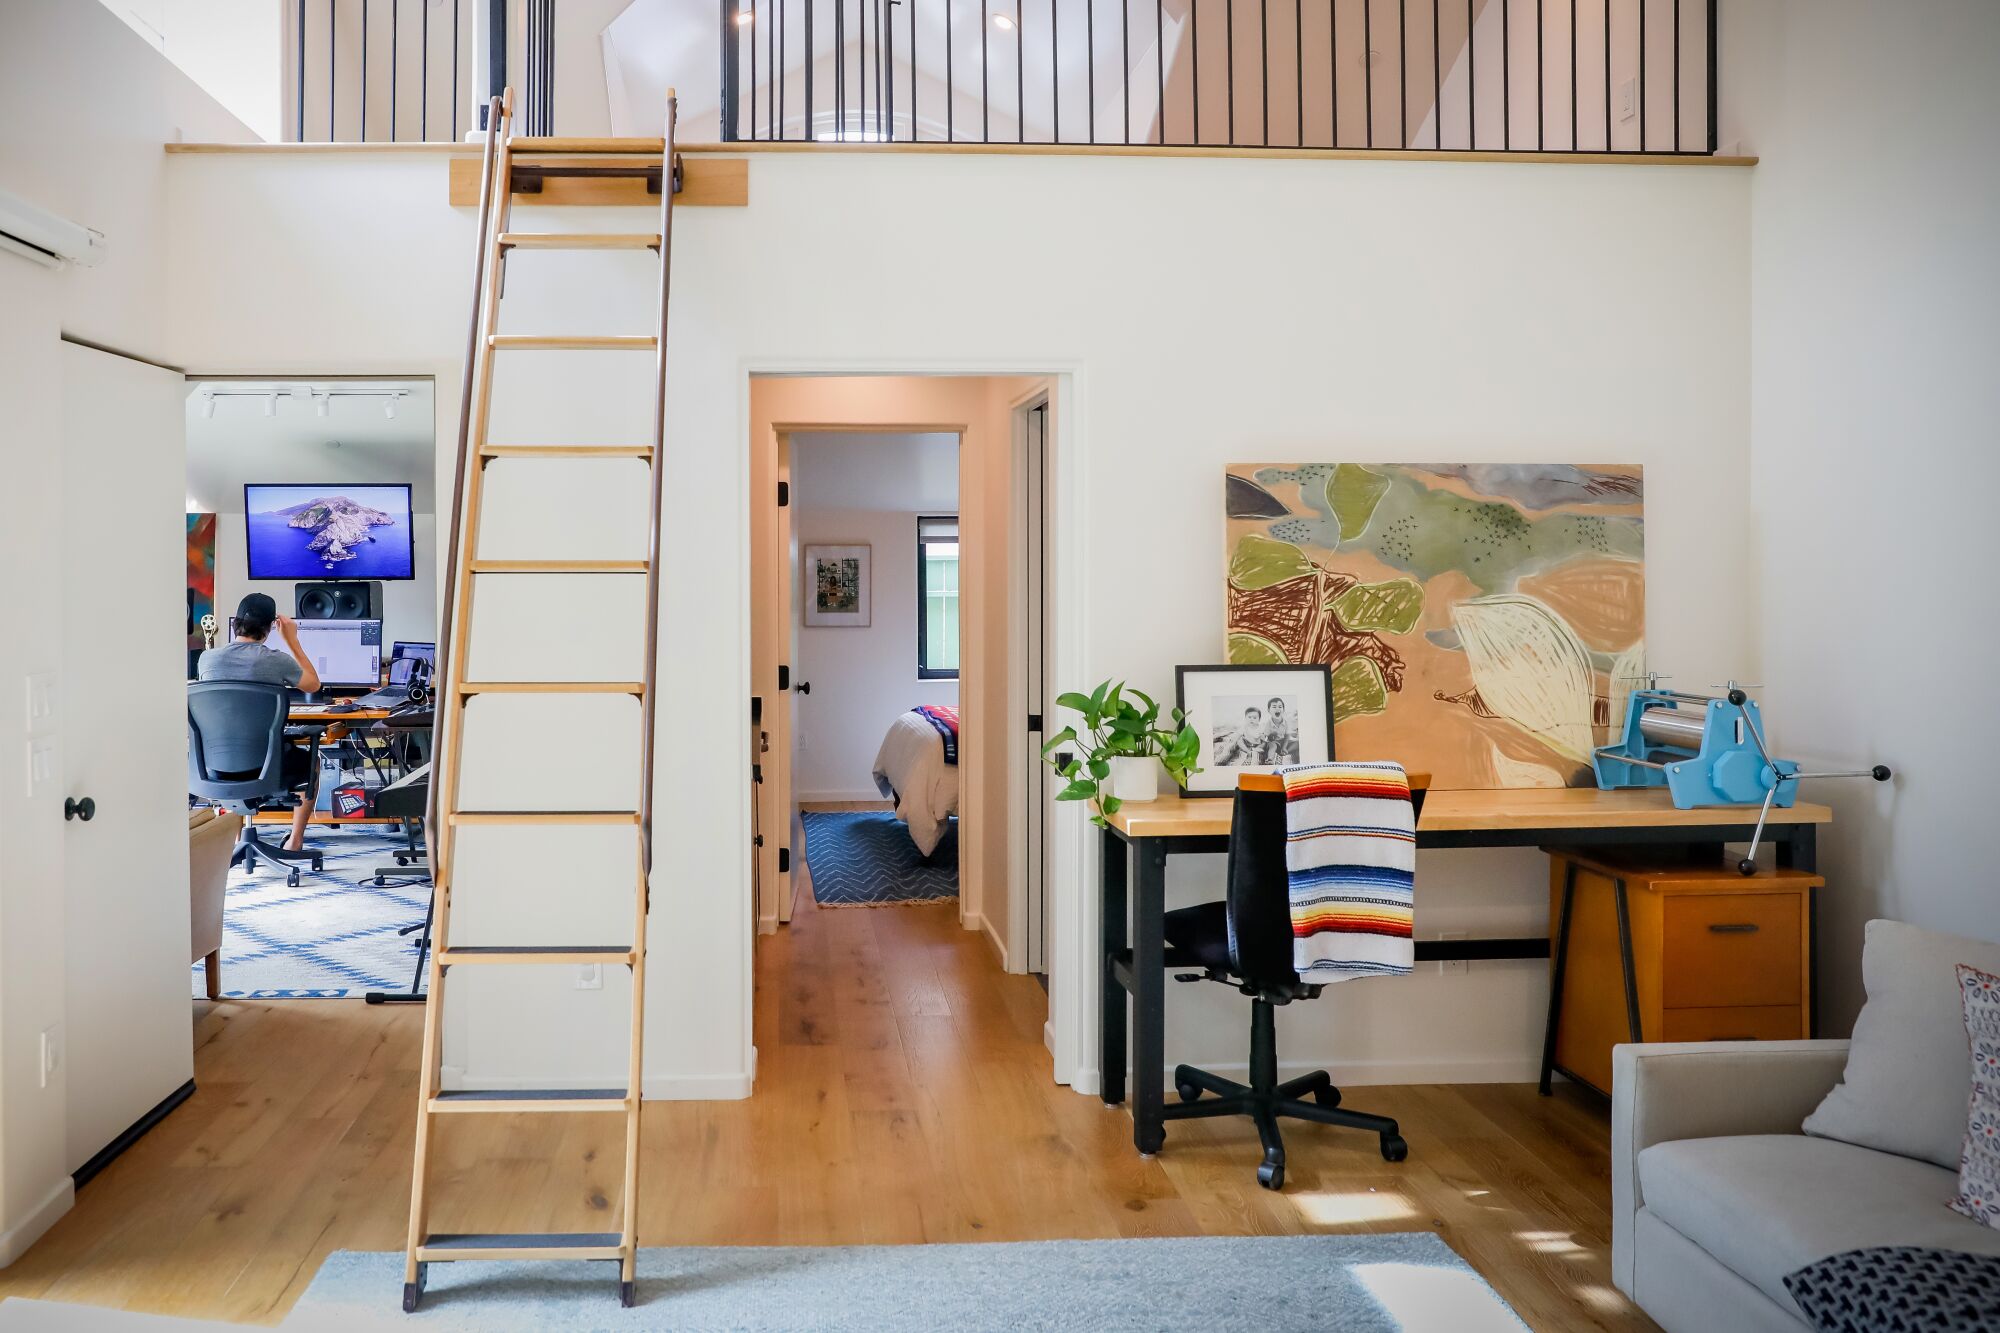 Une vue d'un escalier menant à un grenier, et une porte menant à un bureau avec un homme travaillant à côté du grenier